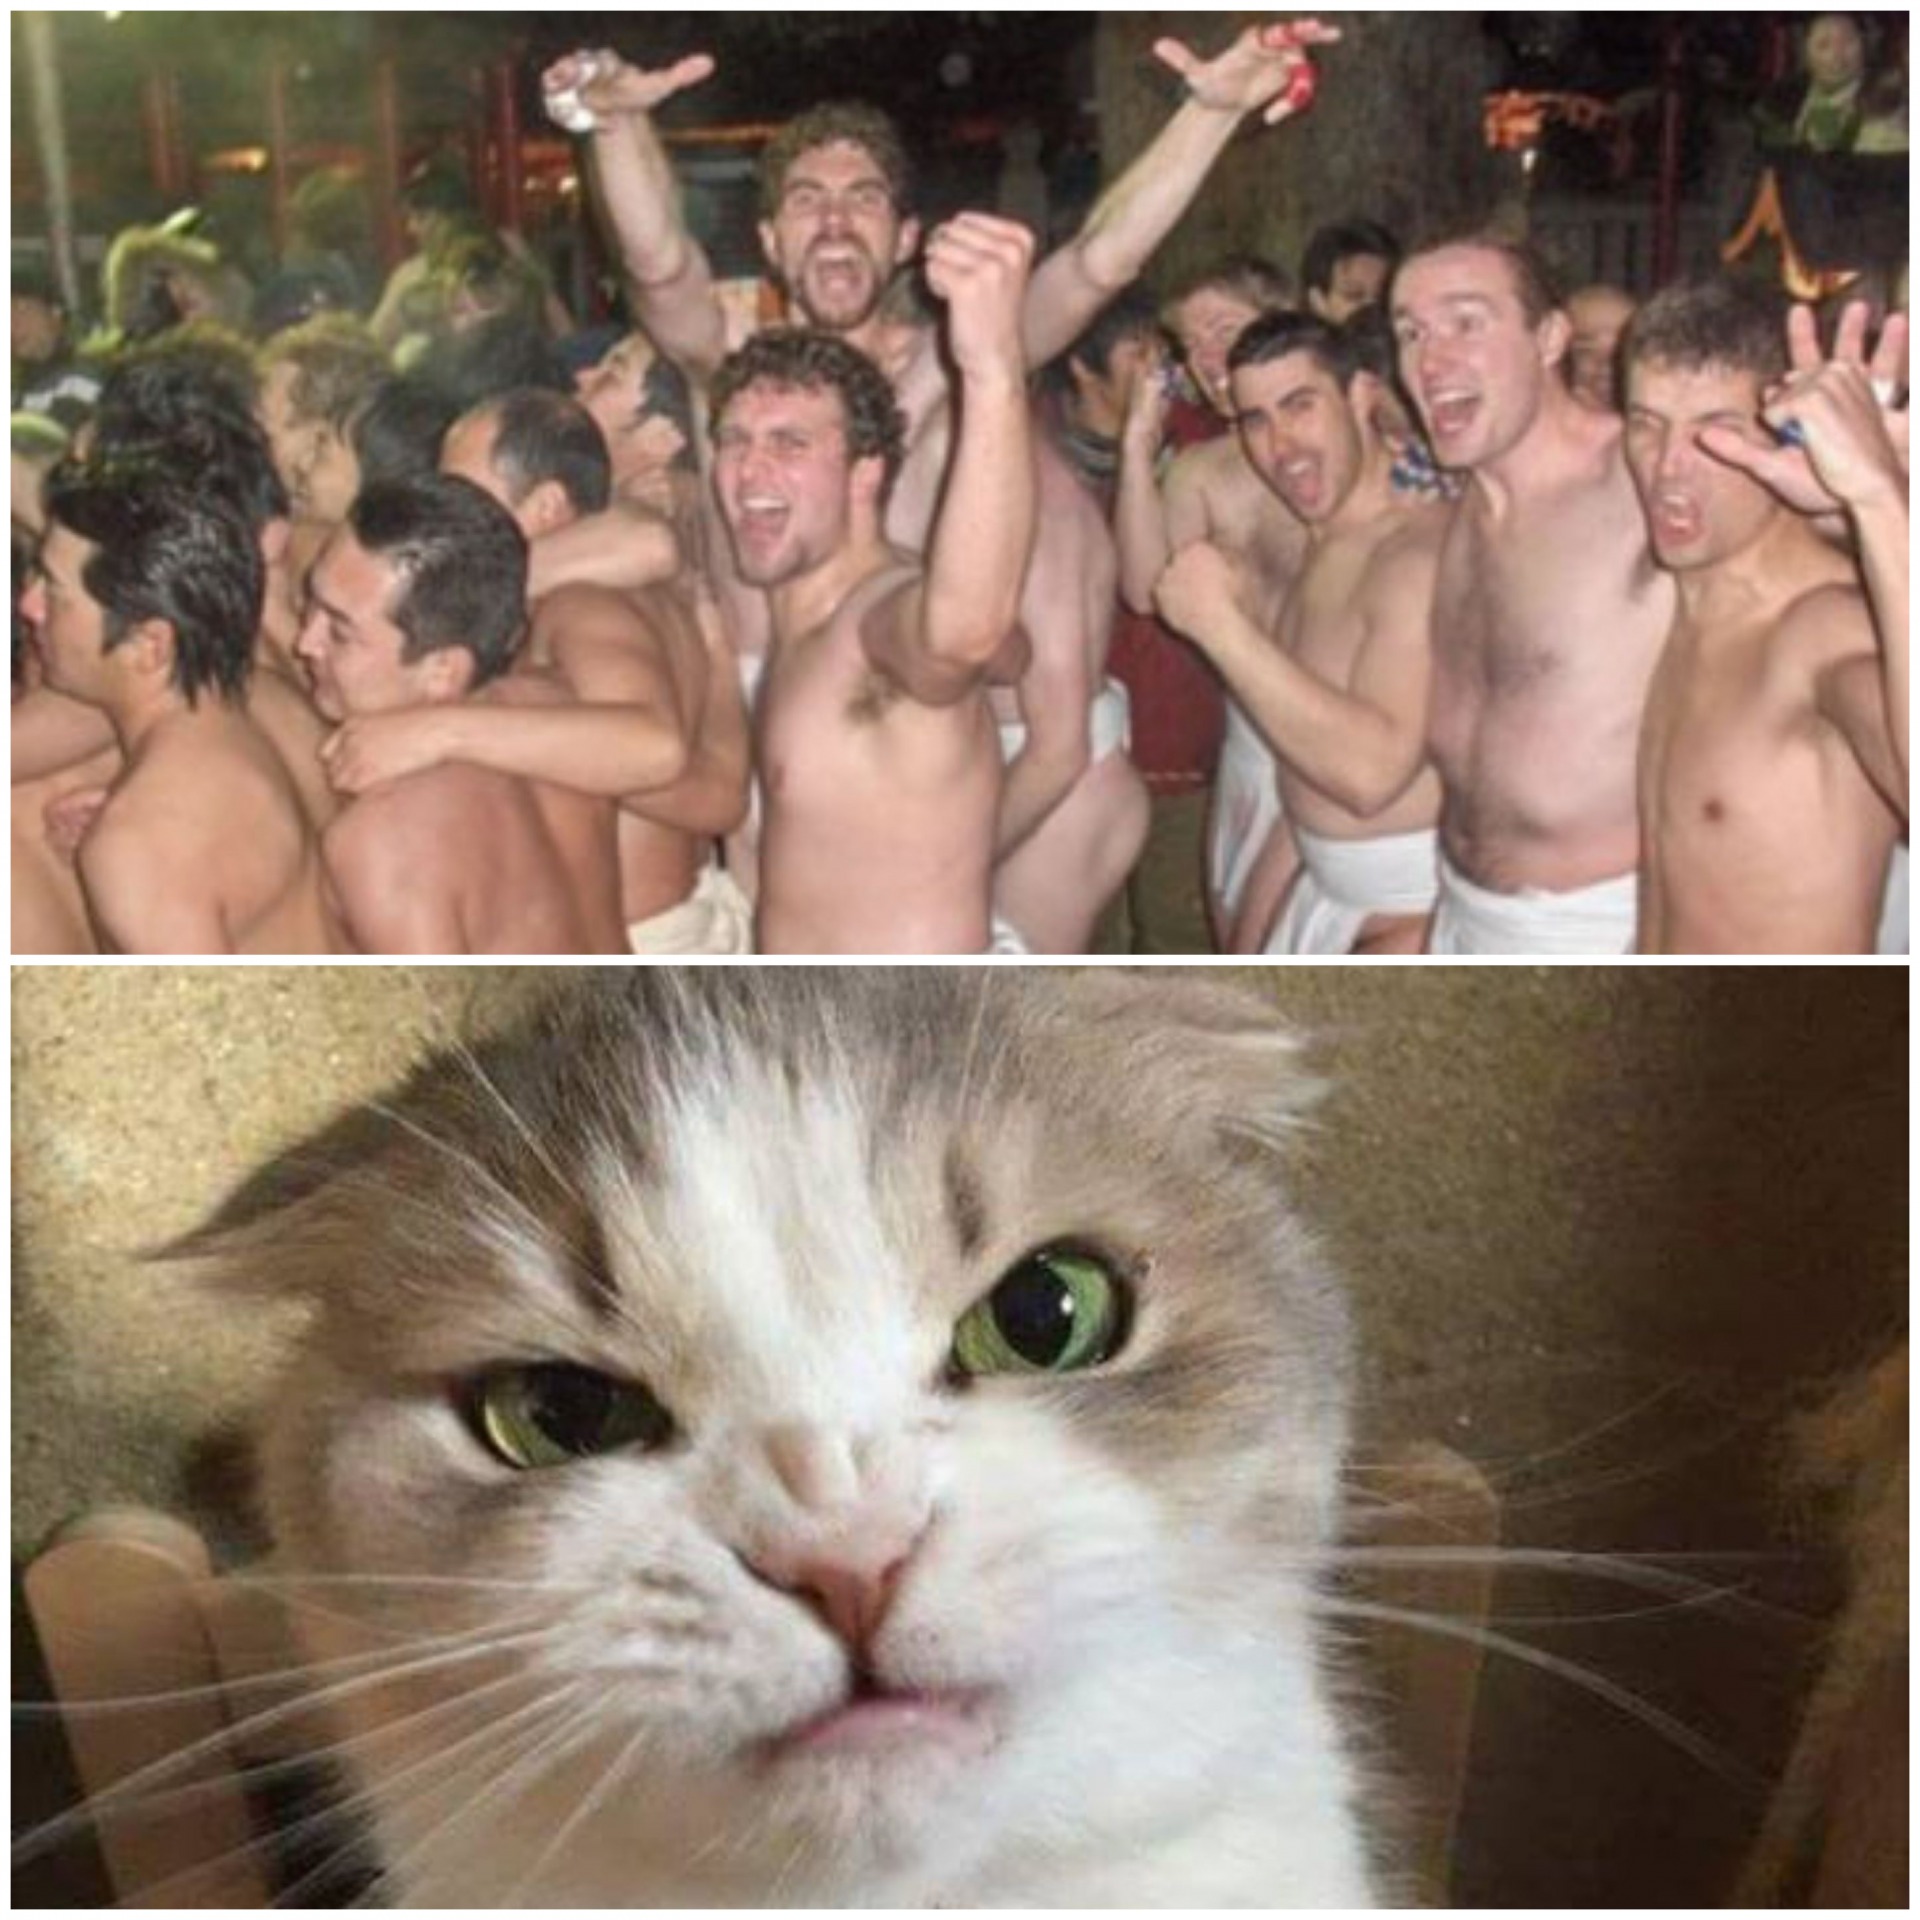 High Quality Naked men vs Cat Blank Meme Template